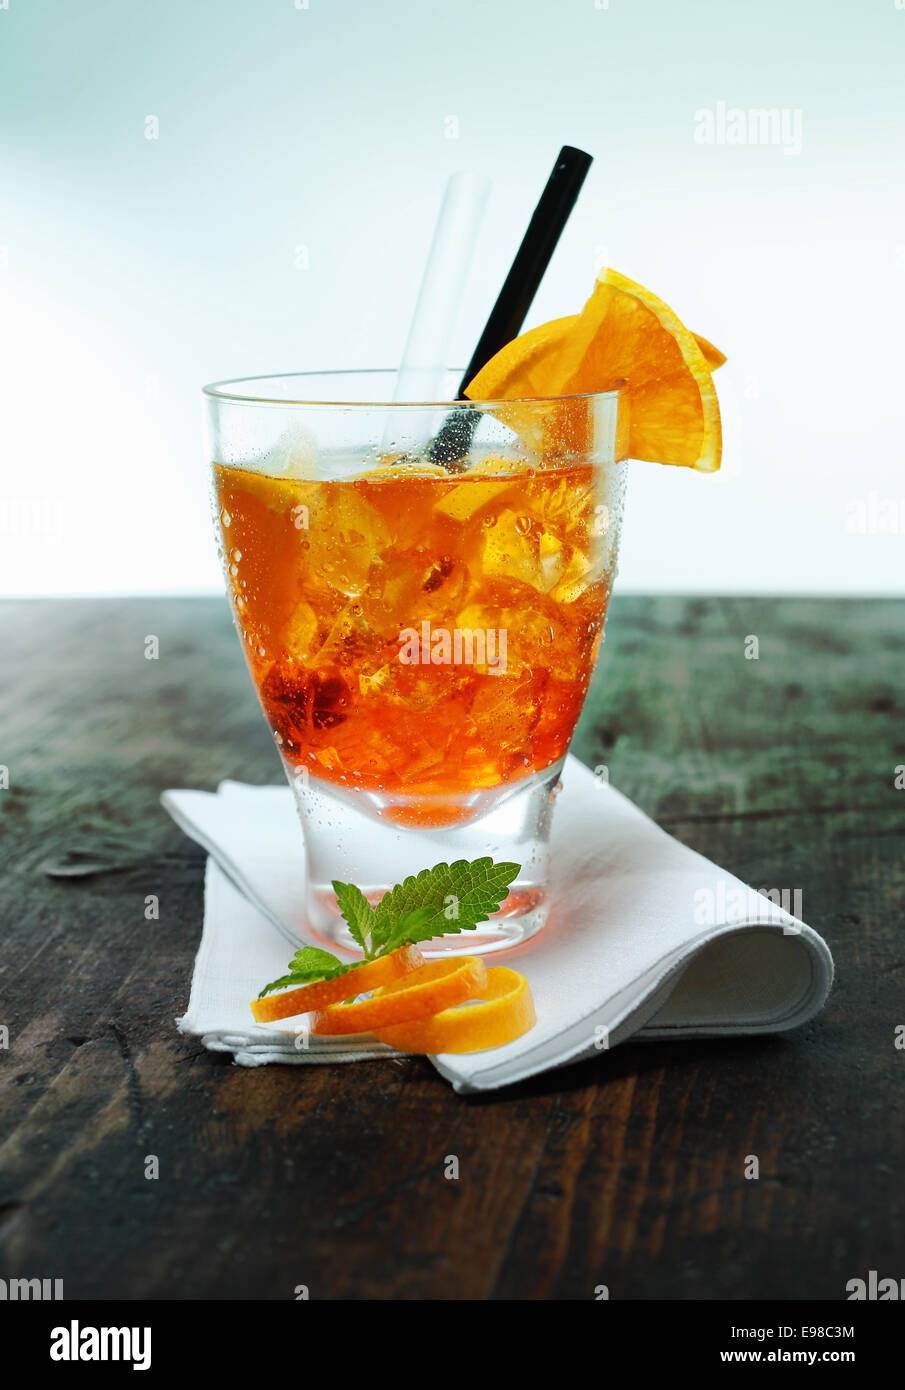 Servire di aperol spritz cocktail con ghiaccio guarnite con foglioline di menta e la scorza di arancia su un tovagliolo piegato su un vecchio banco di legno in un bar o club Foto Stock